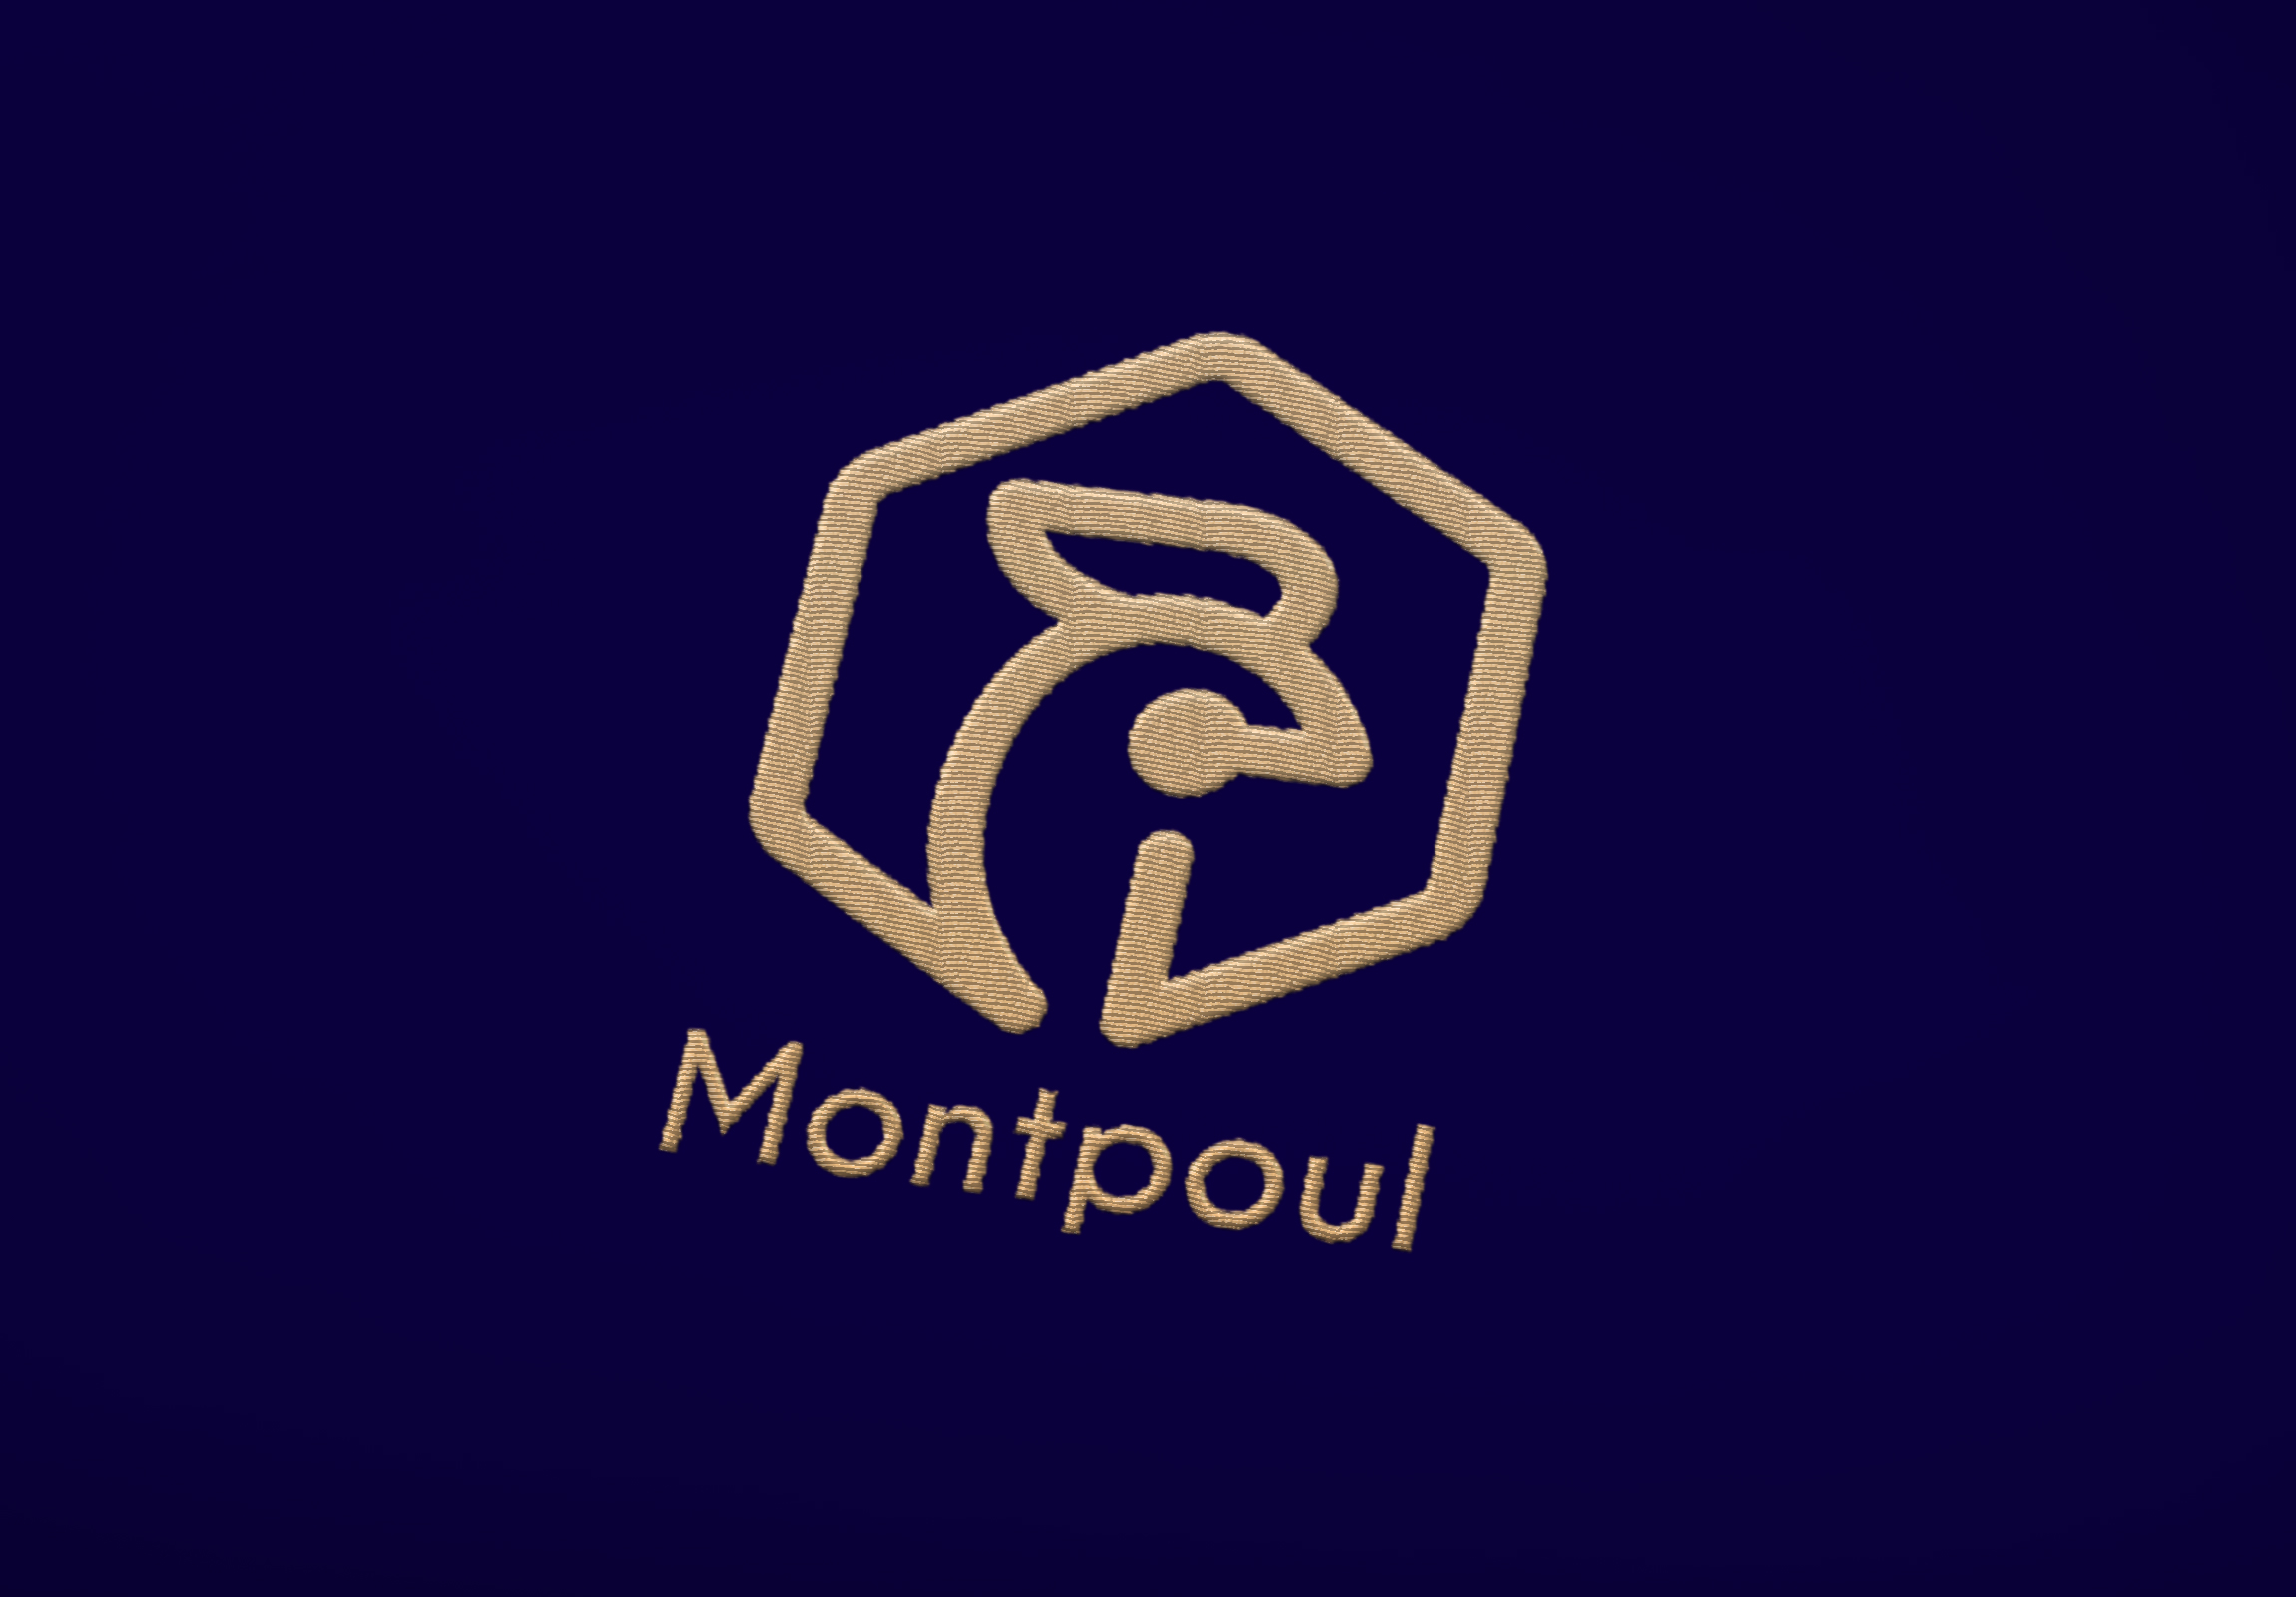 Logo Montpoul brodé